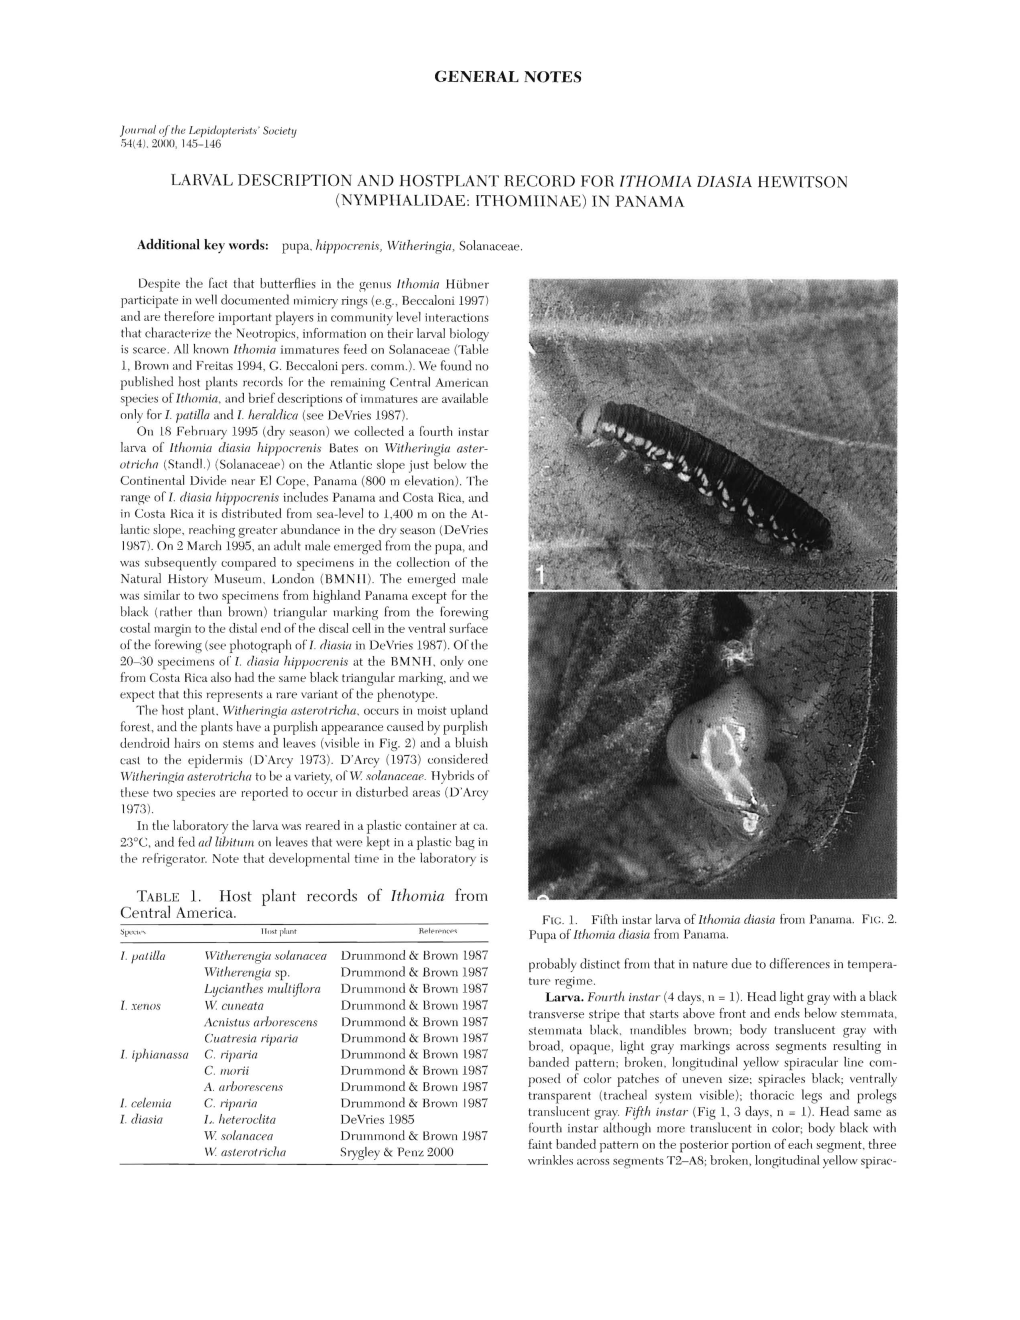 Nymphalidae: Ithomiinae) in Panama